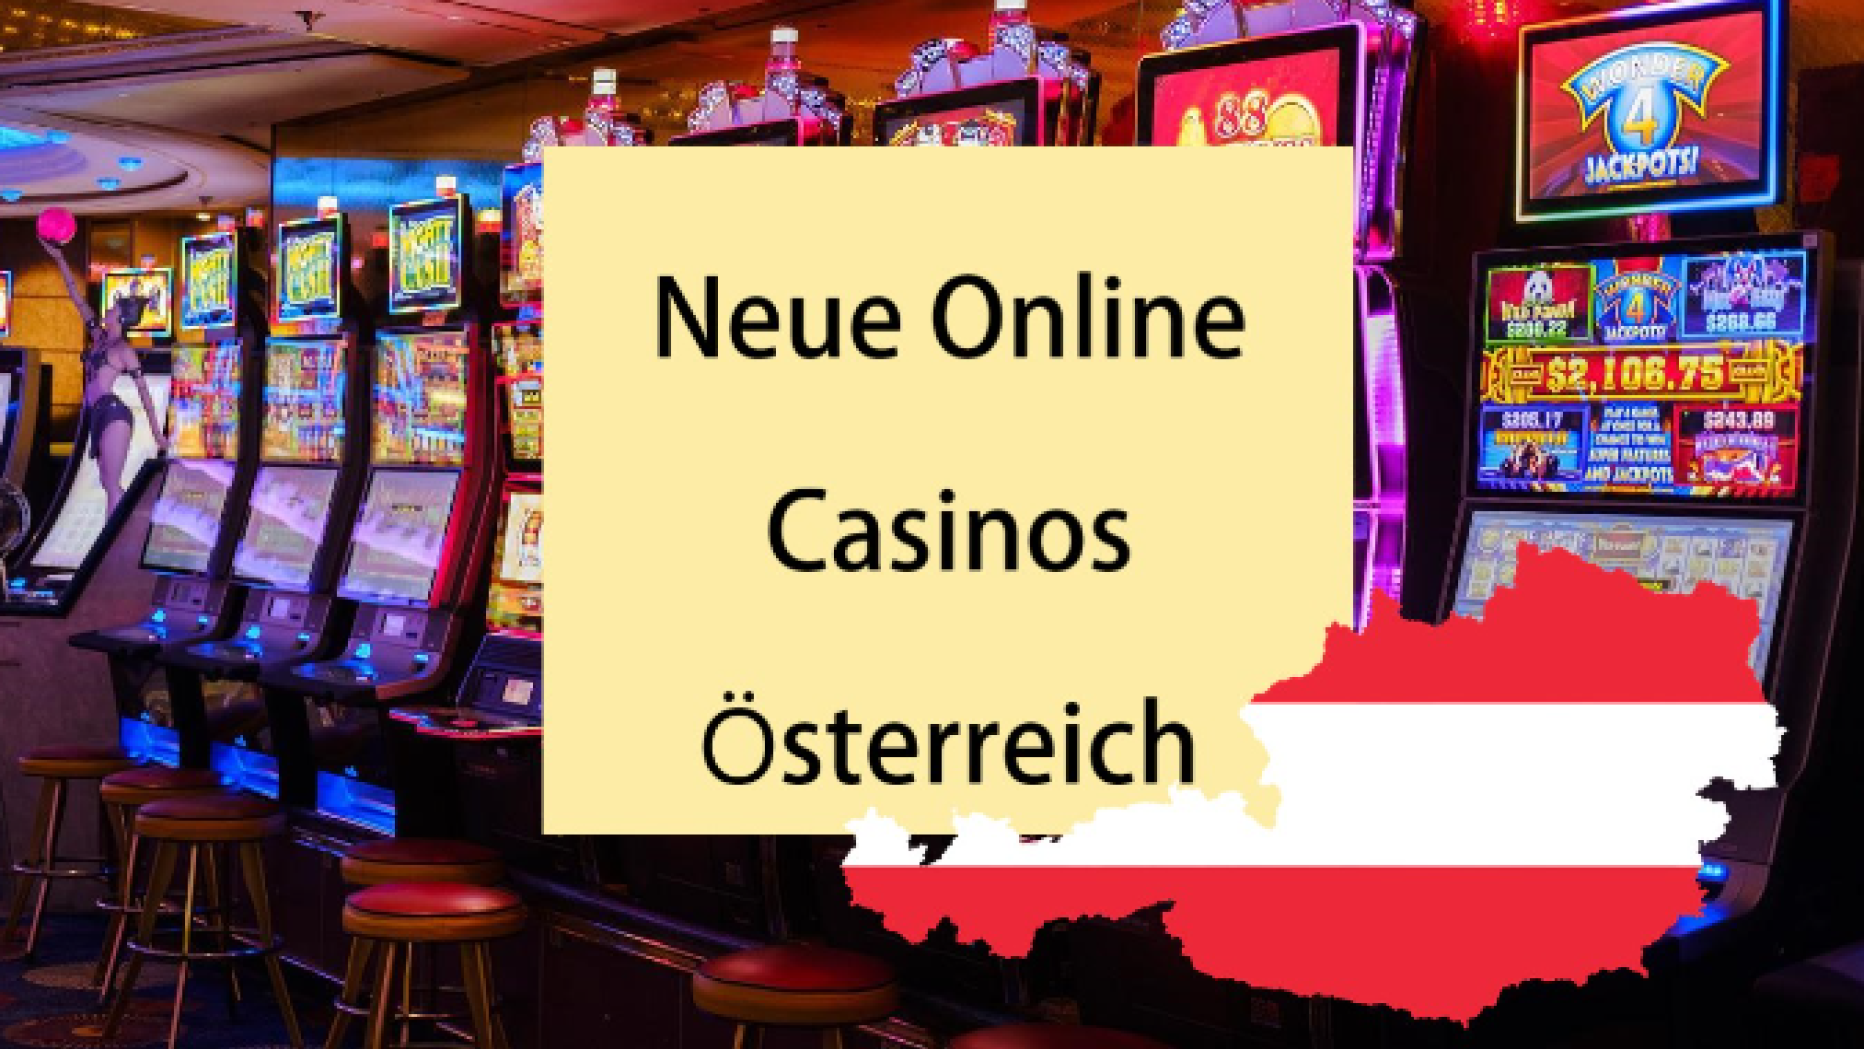 So starten Sie seriös Online Casinos mit weniger als $110